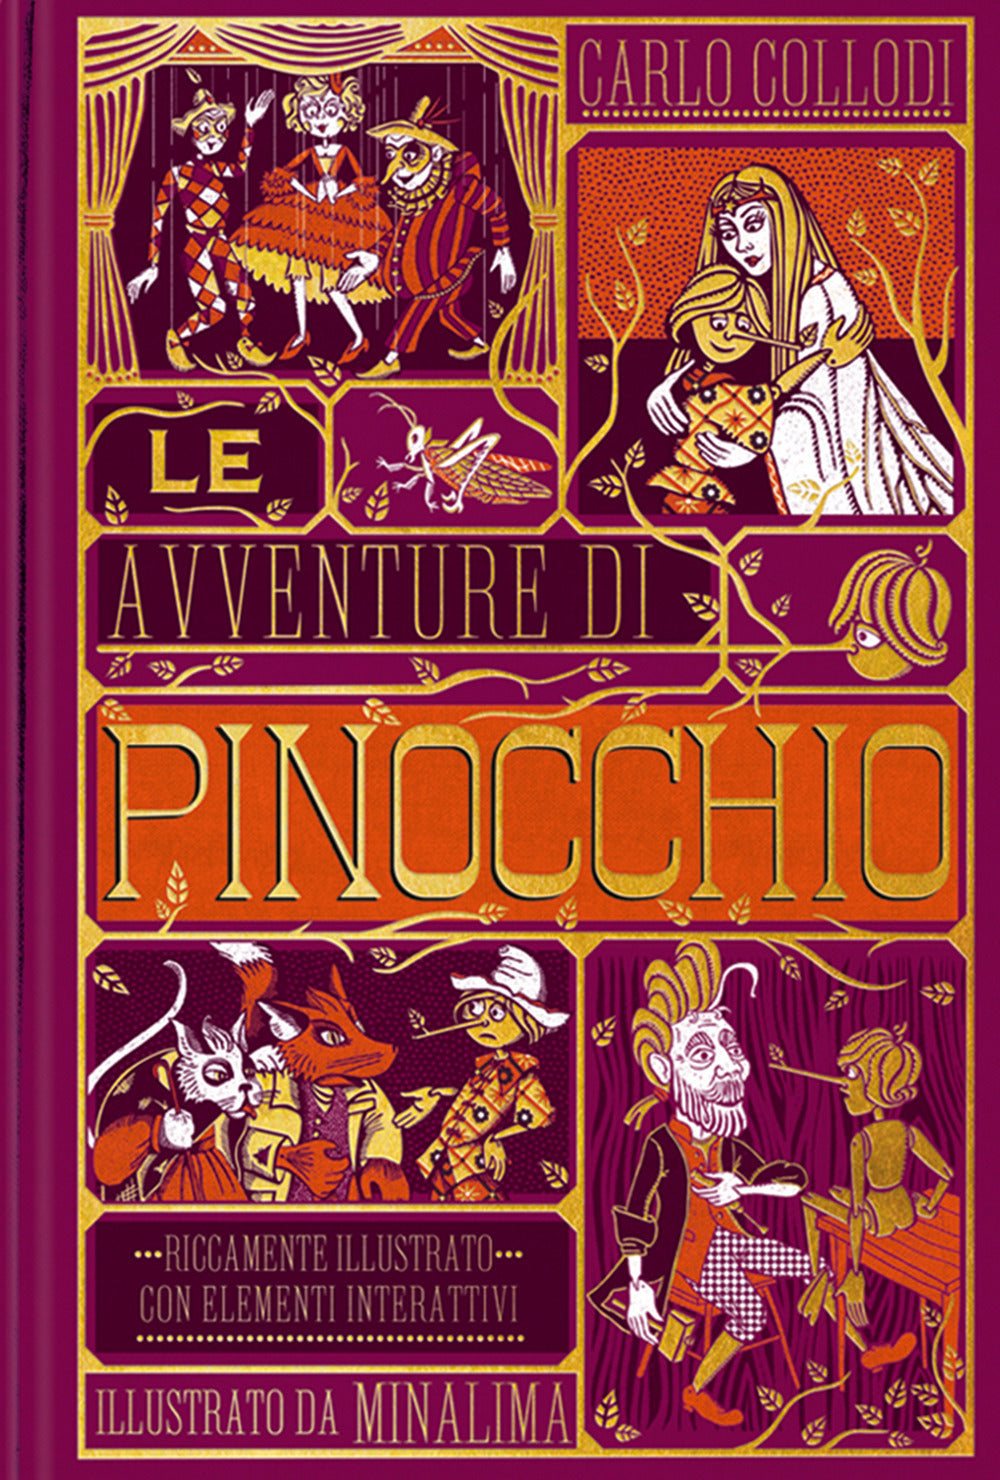 Le avventure di Pinocchio. Ediz. integrale.